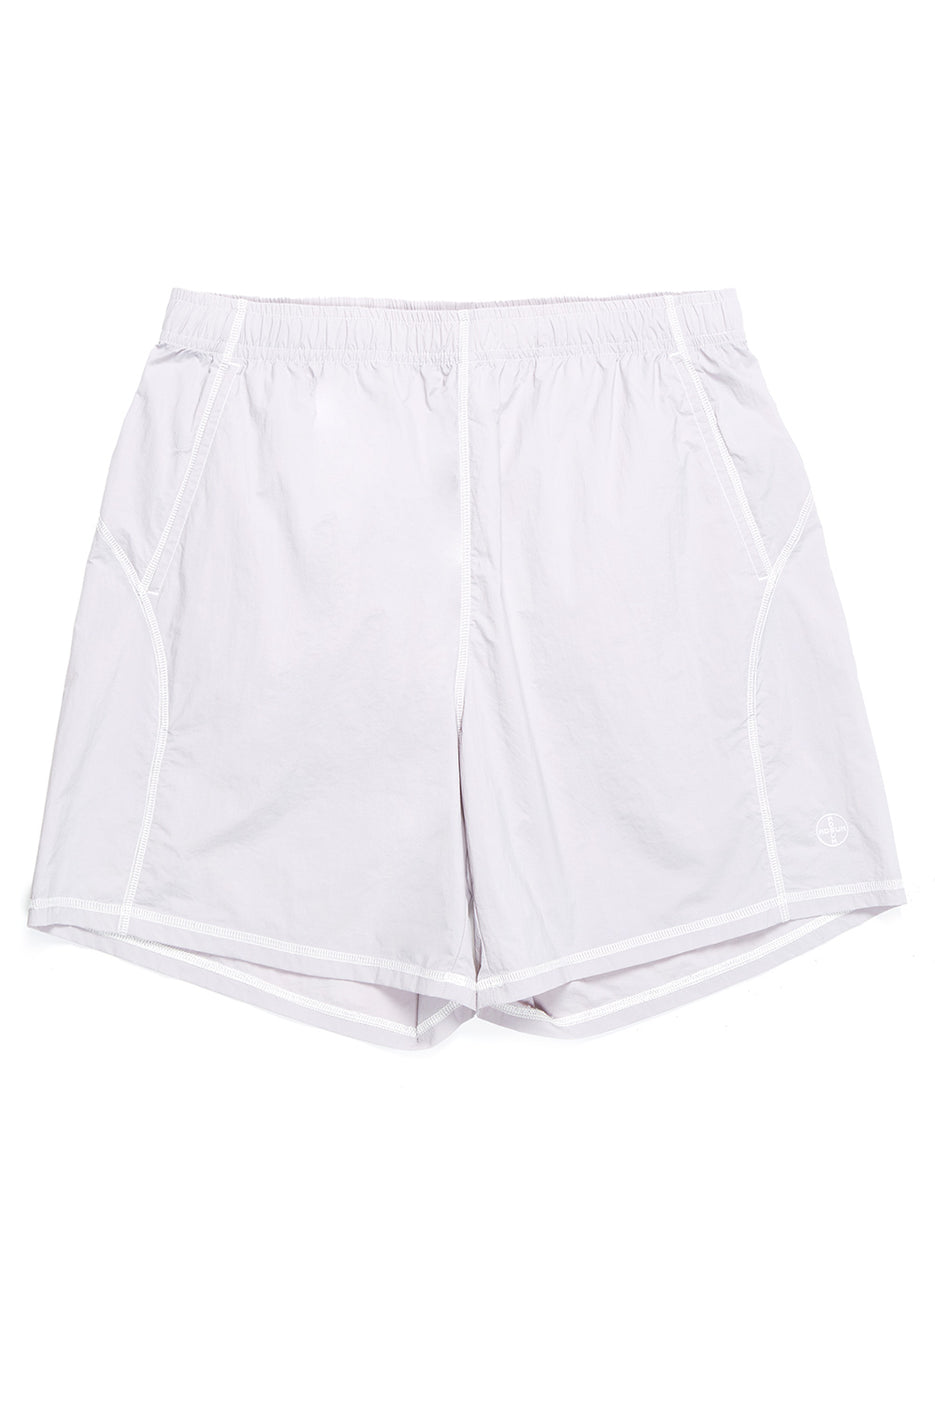 Adsum Men's Overlock Seam Shorts 0